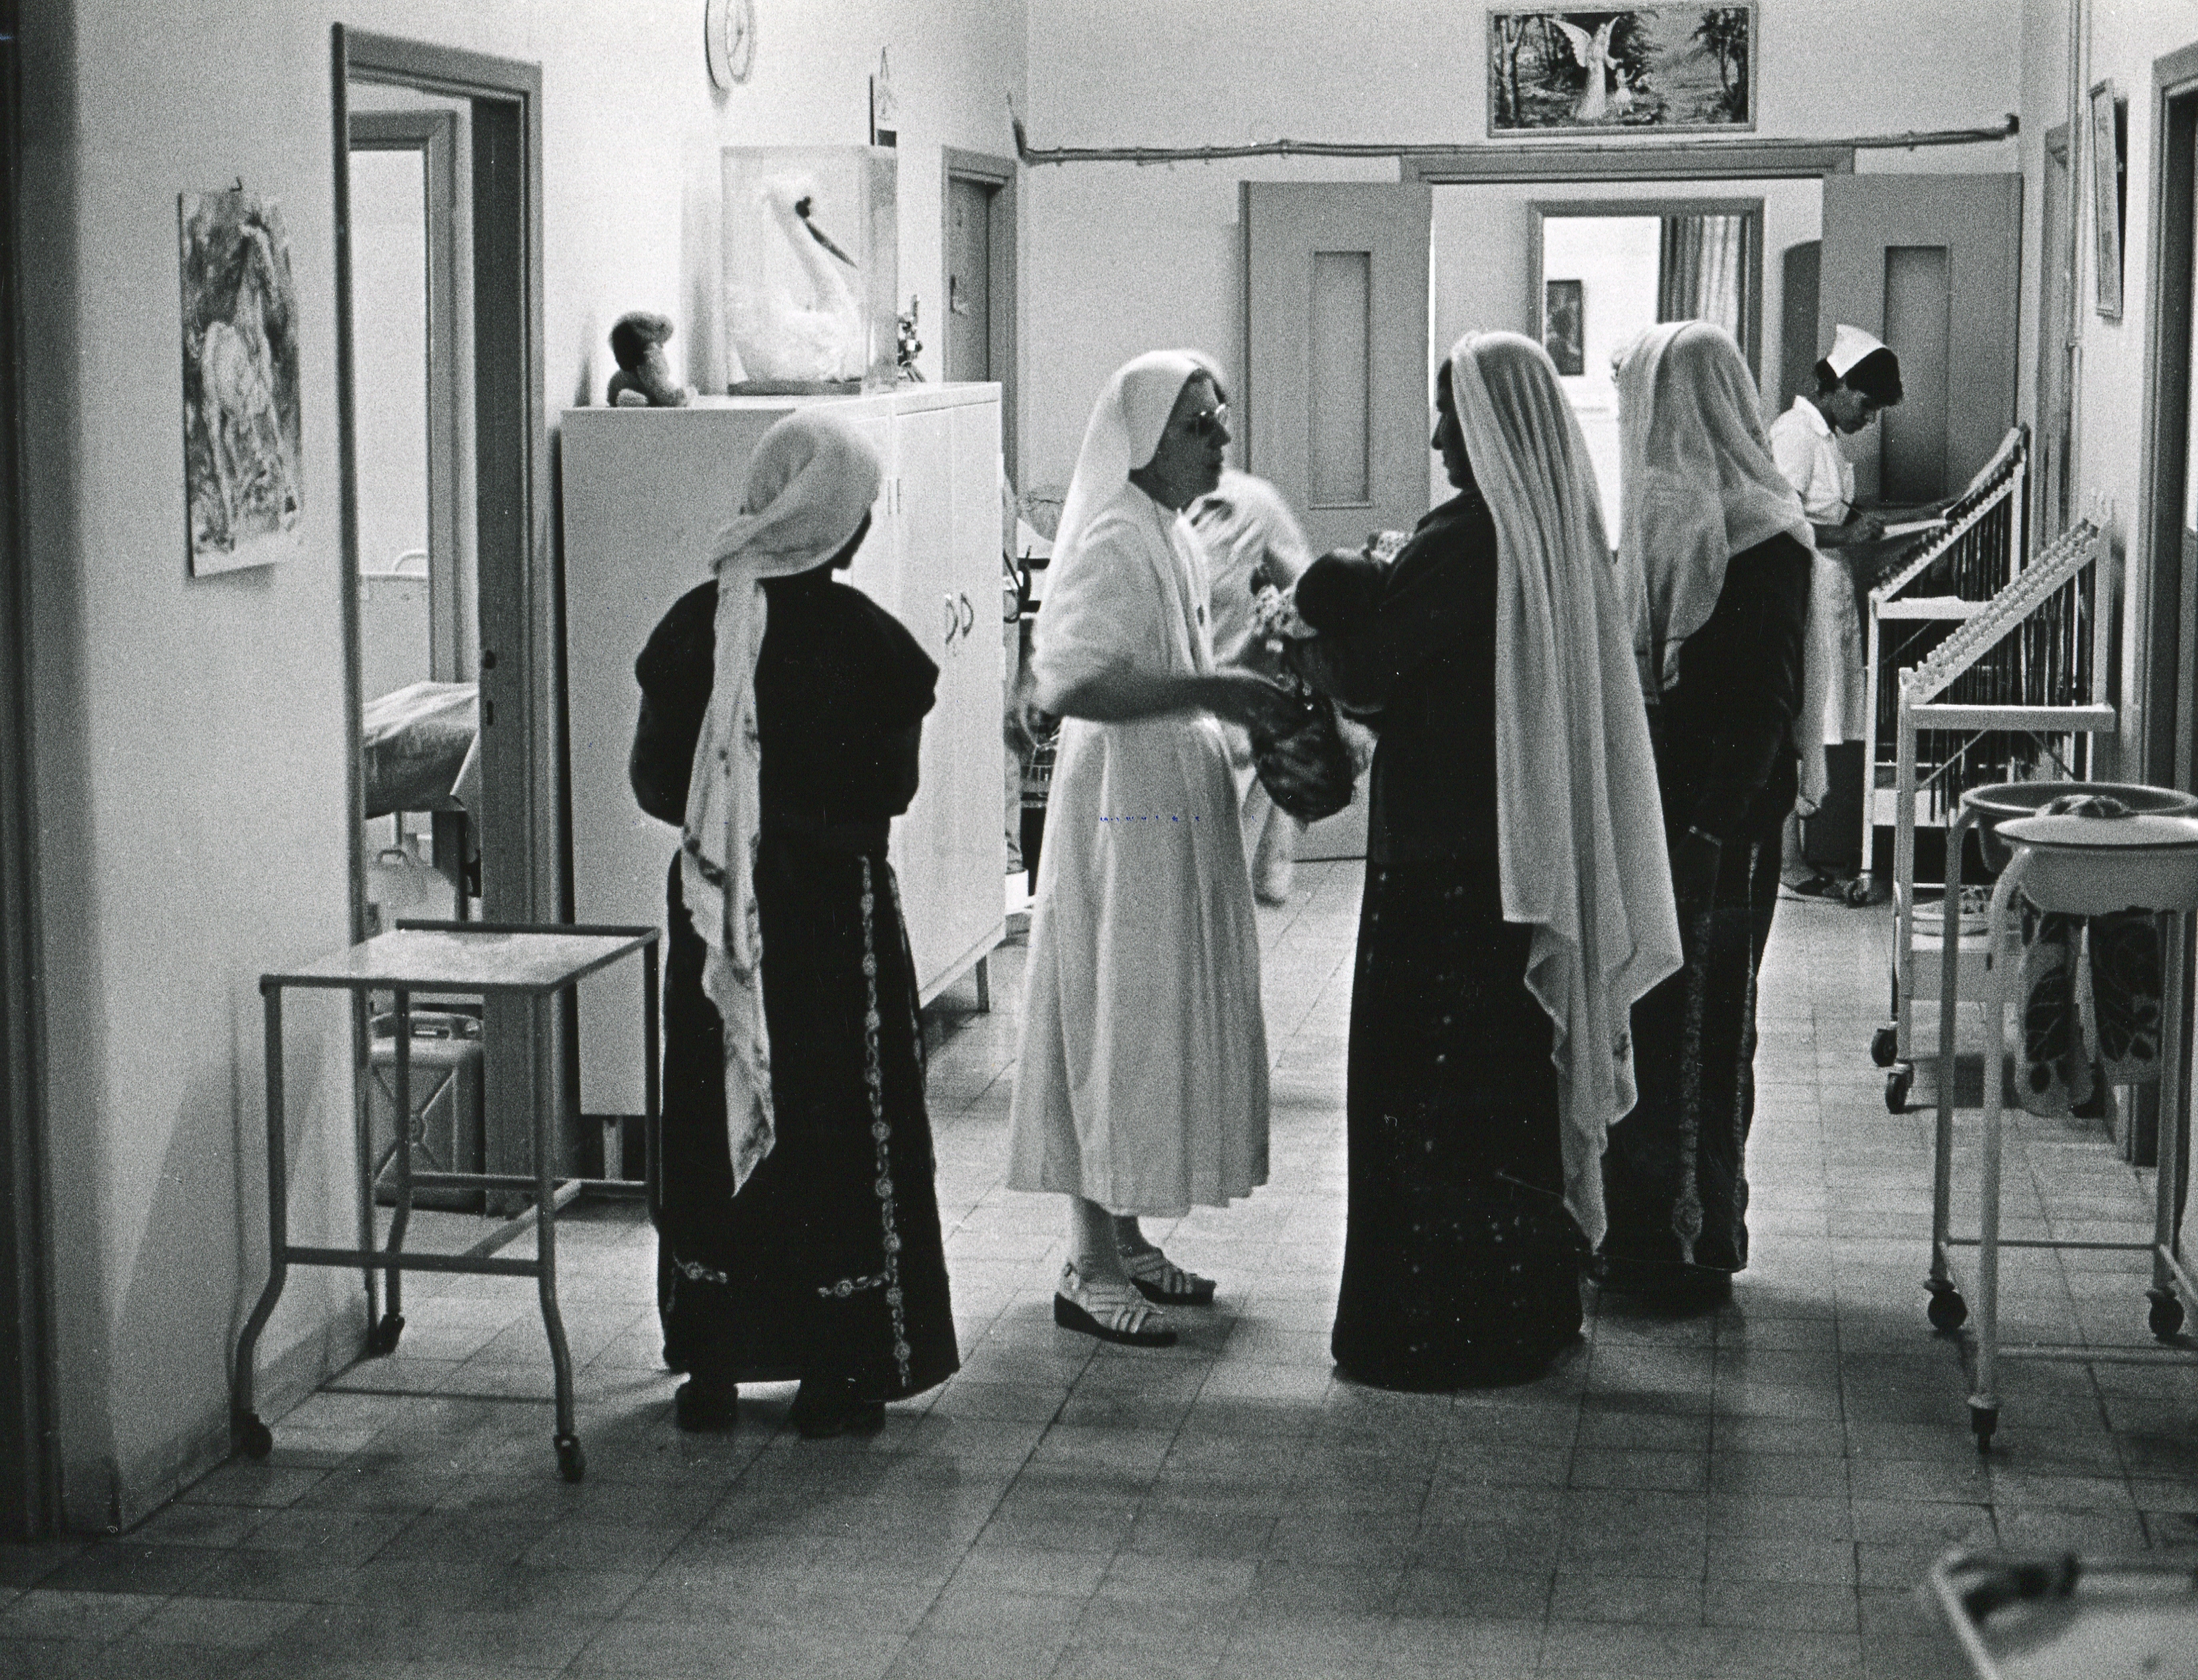 Im Flur stehen vier Frauen, Drei davon sind komplett im schwarz gekleidet und eine im weiß. Alle tragen einen langen Schleier. Sie haben Babies in der Hand.